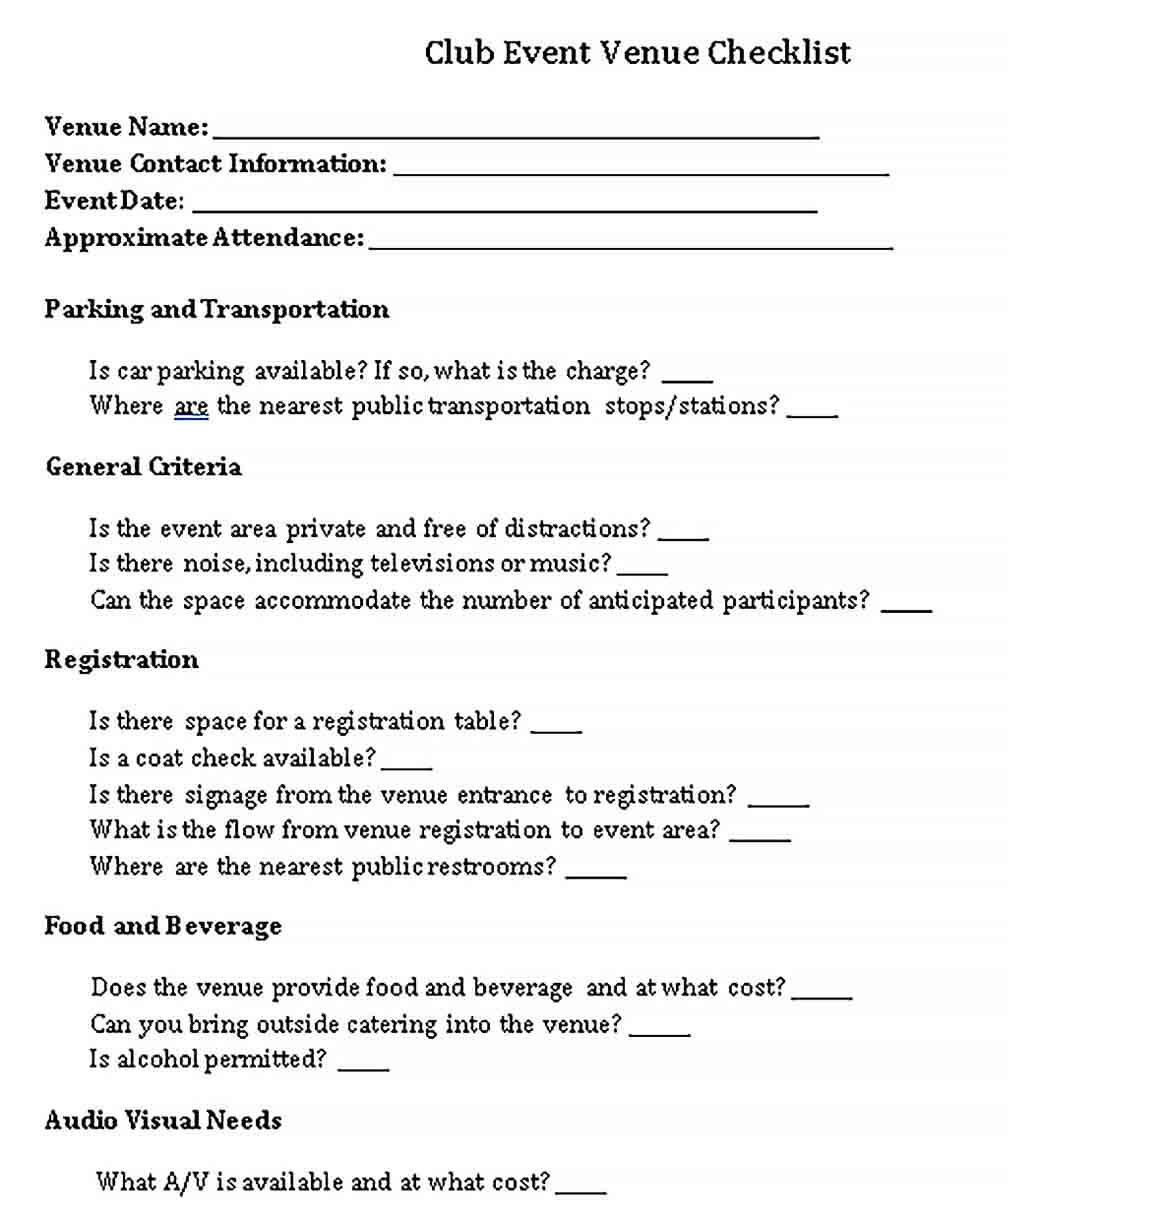 Sample Club Event Venue Checklist